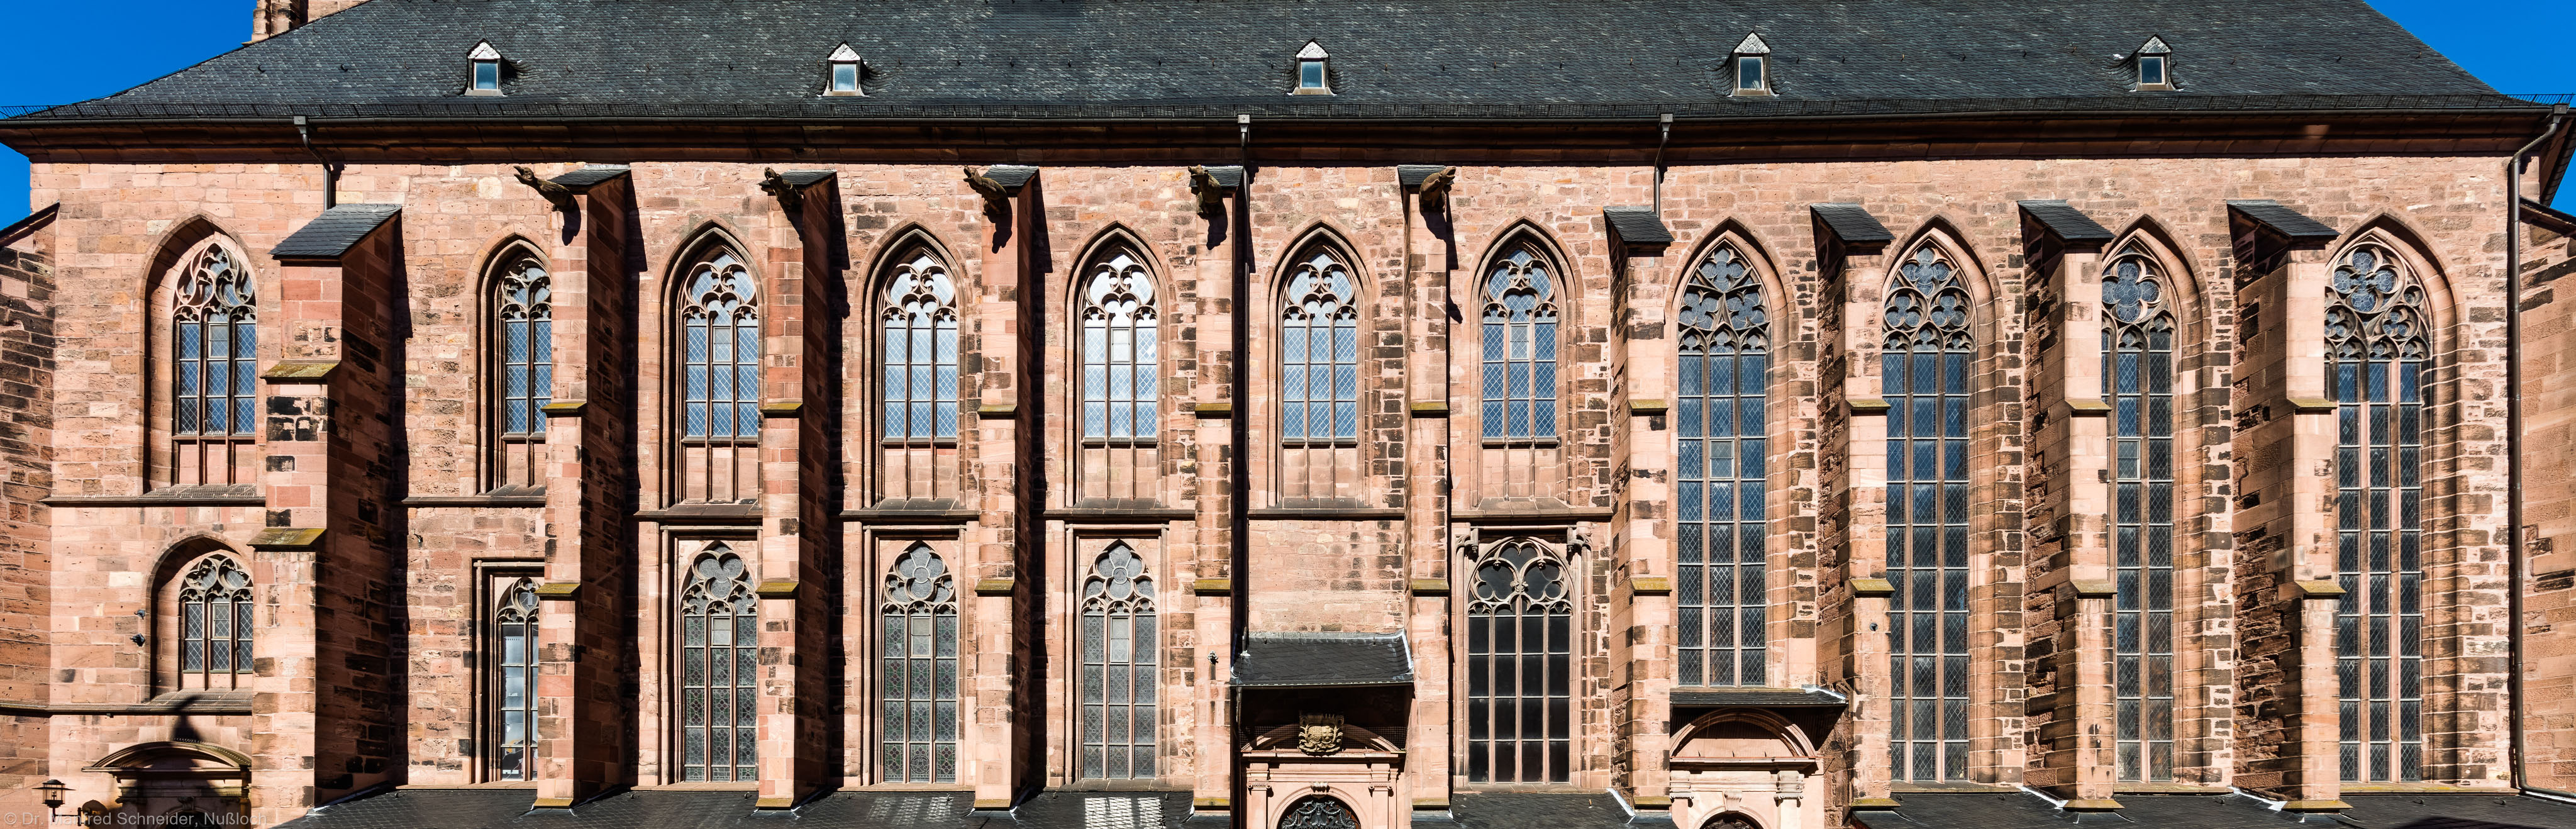 Heidelberg - Heiliggeistkirche - Südseite - Blick auf die gesamte Südseite, vom Westwerk bis zum Chor (aufgenommen im Oktober 2015, am frühen Nachmittag)